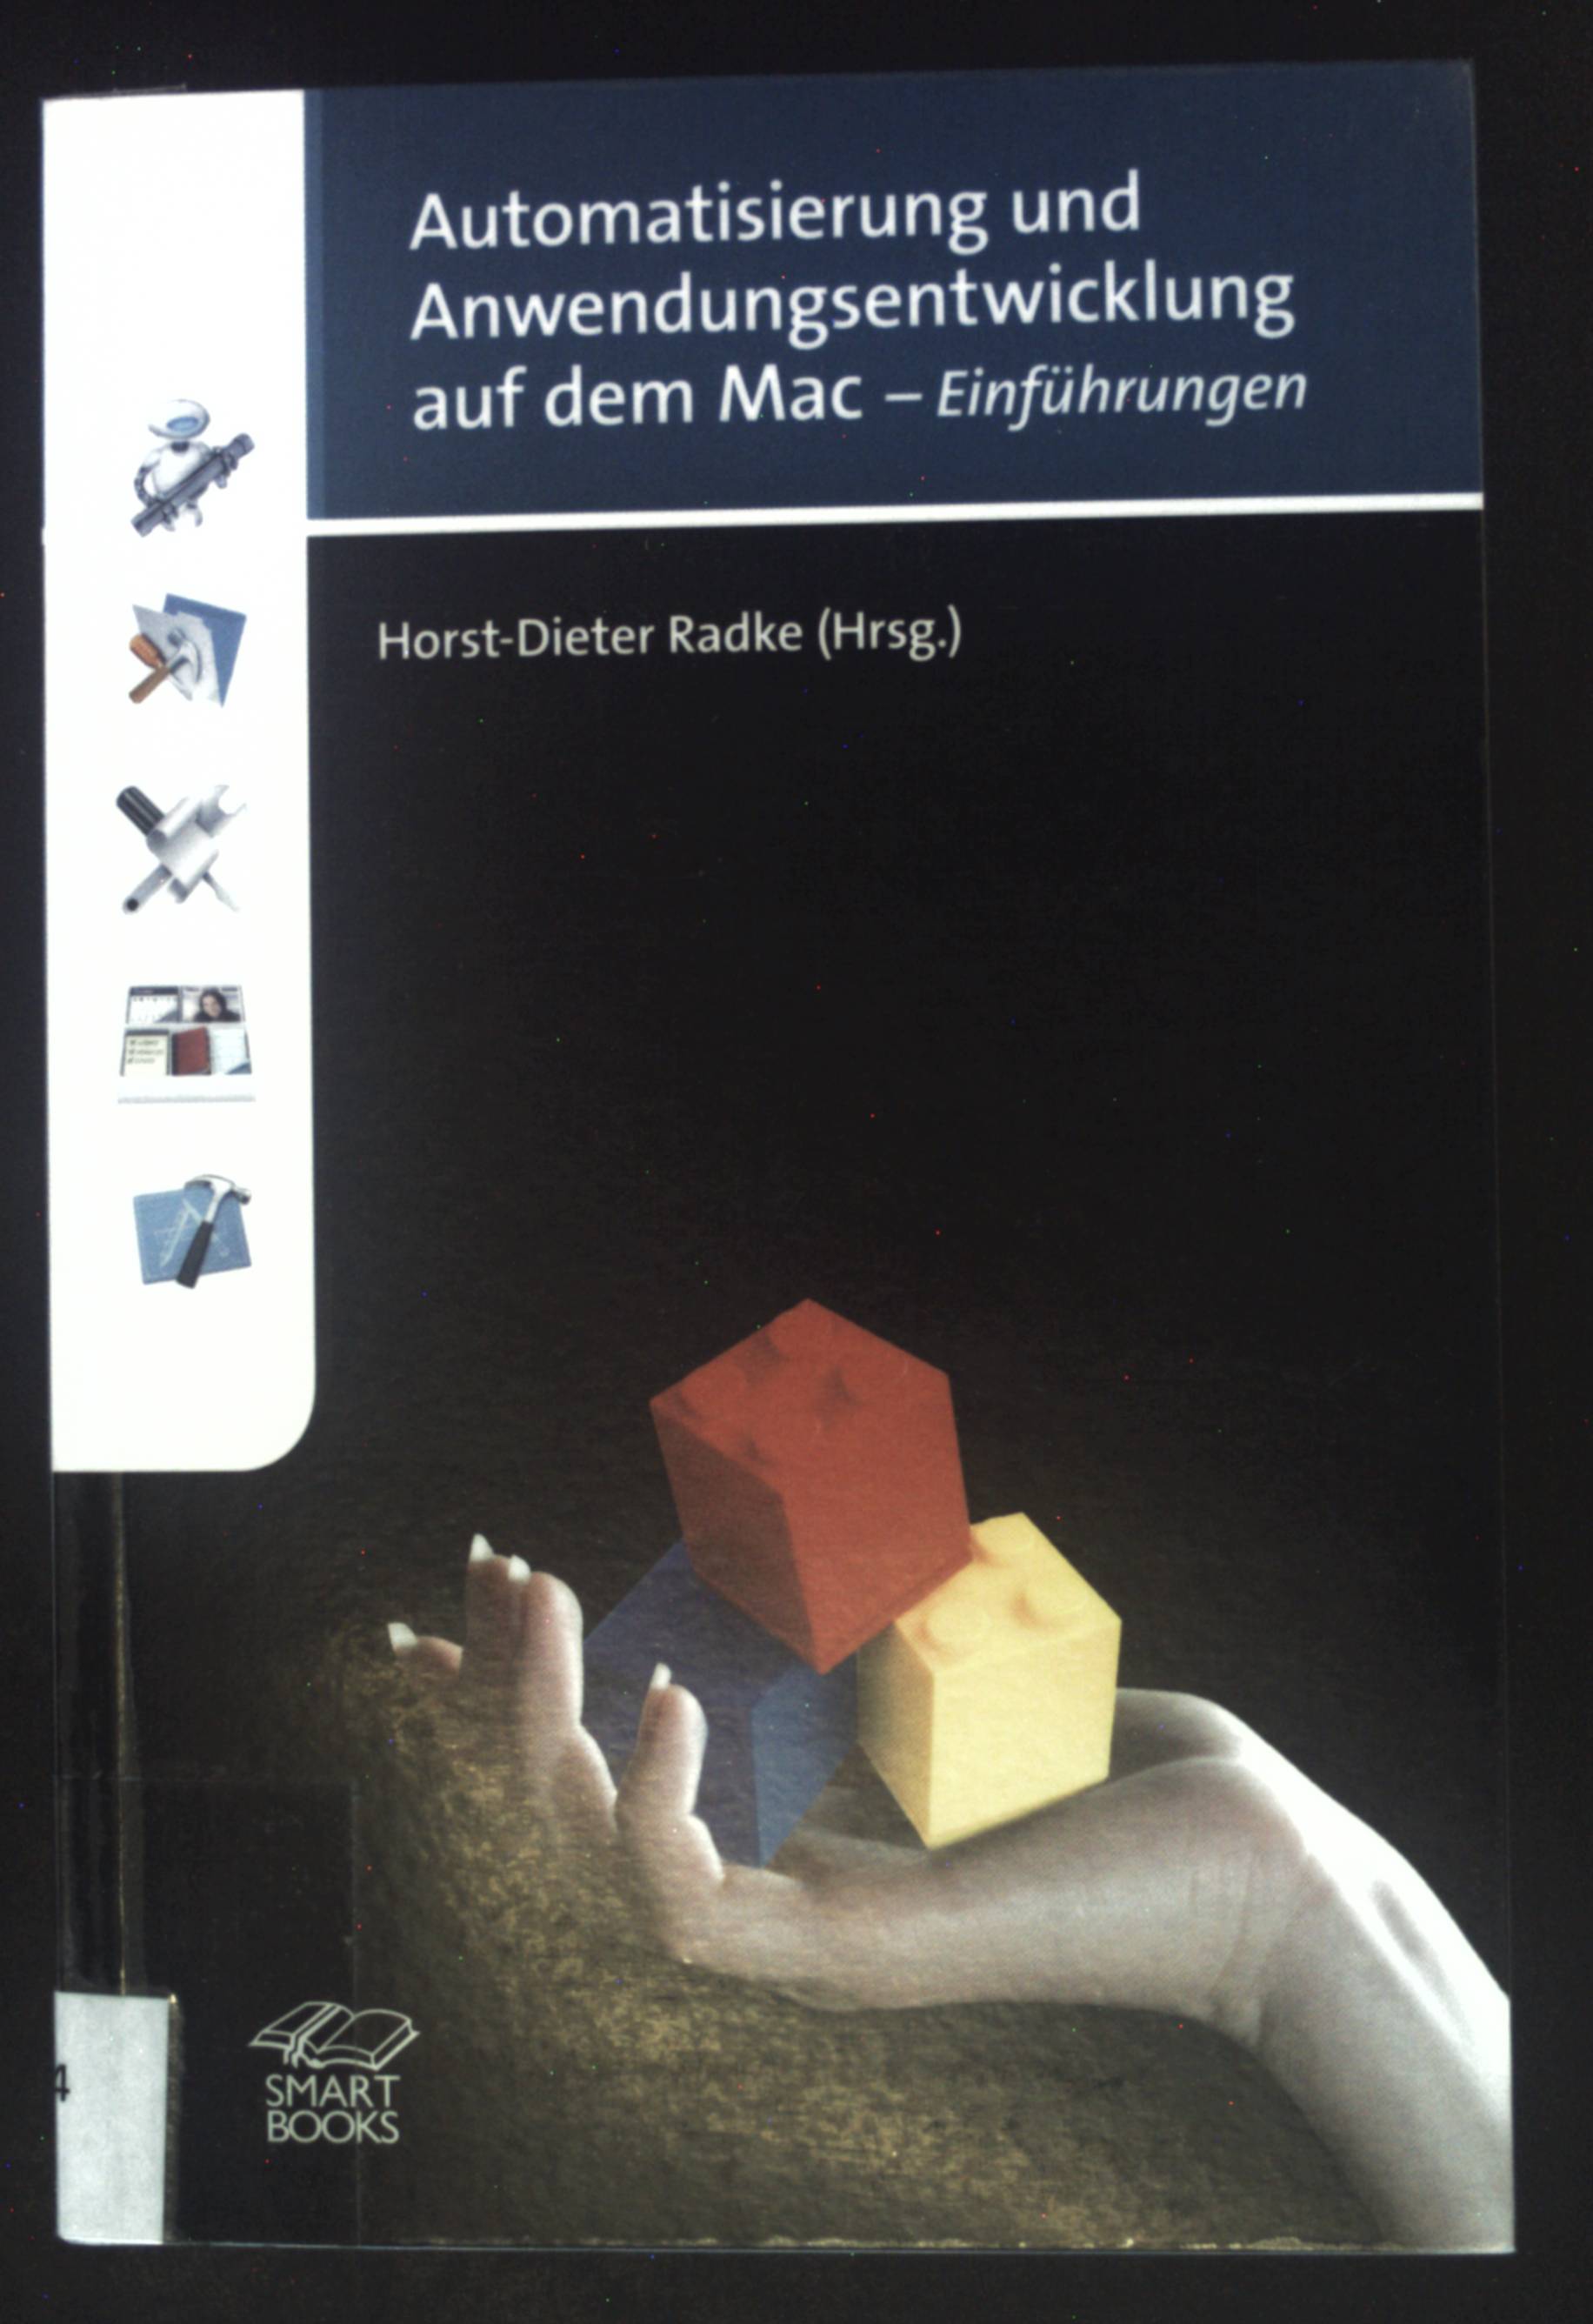 Automatisierung und Anwendungsentwicklung auf dem Mac : Einführungen. - Radke, Horst-Dieter und Christian Kienle